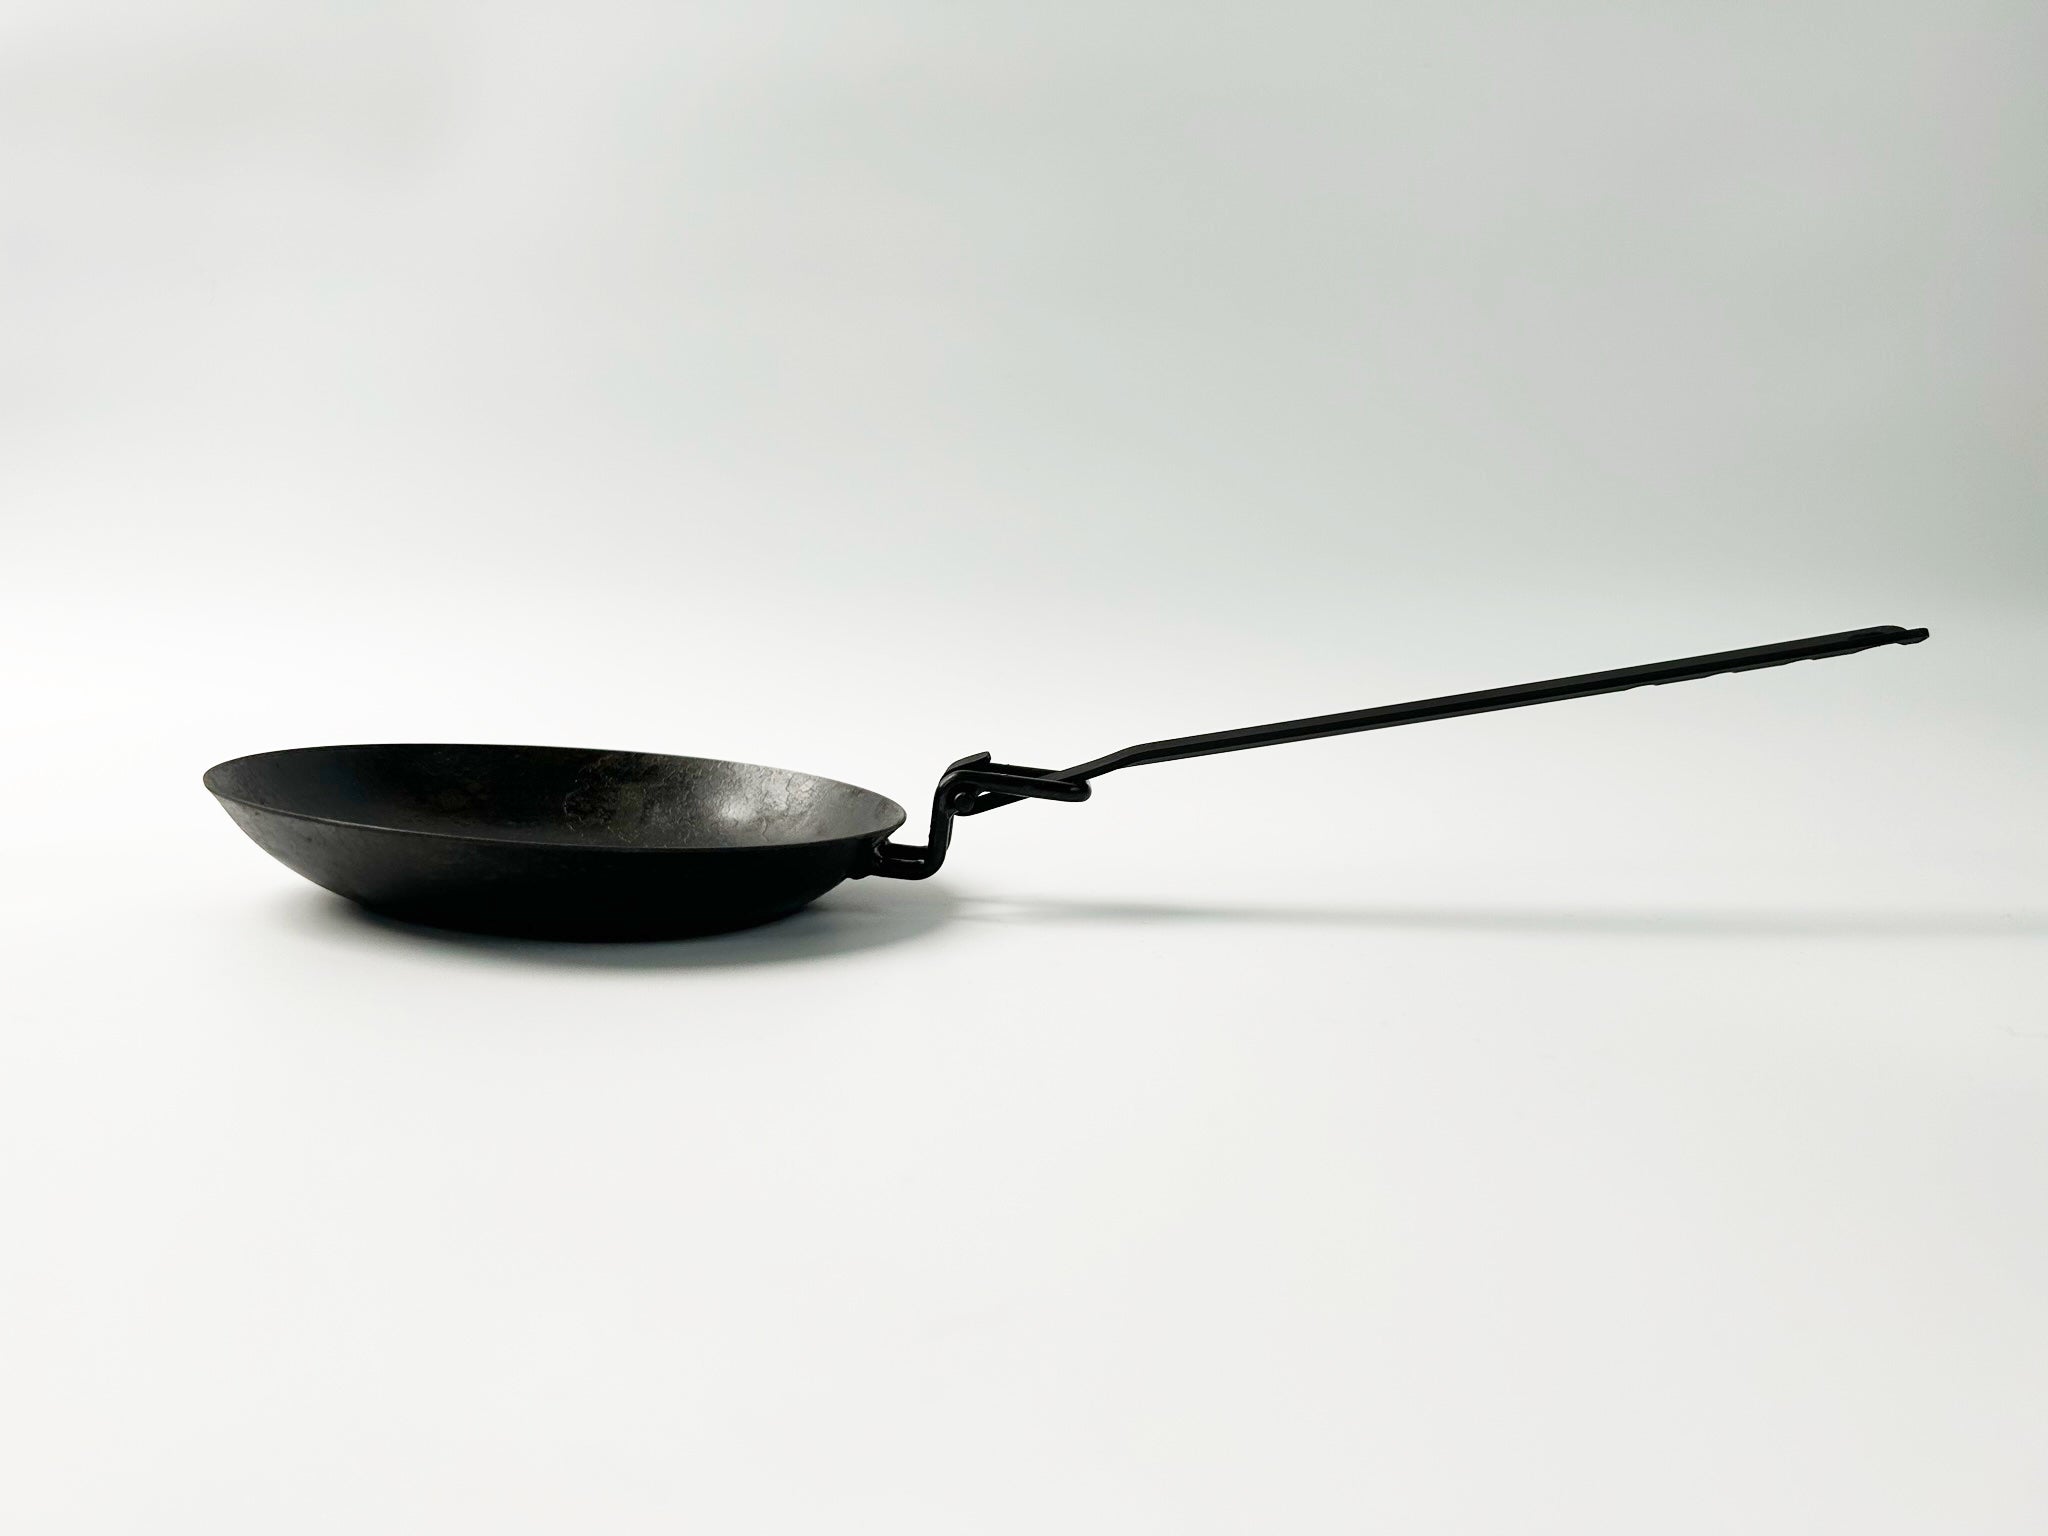 IRON WORKS KORU TORE PAN 17cm フライパン - バーベキュー・調理用品